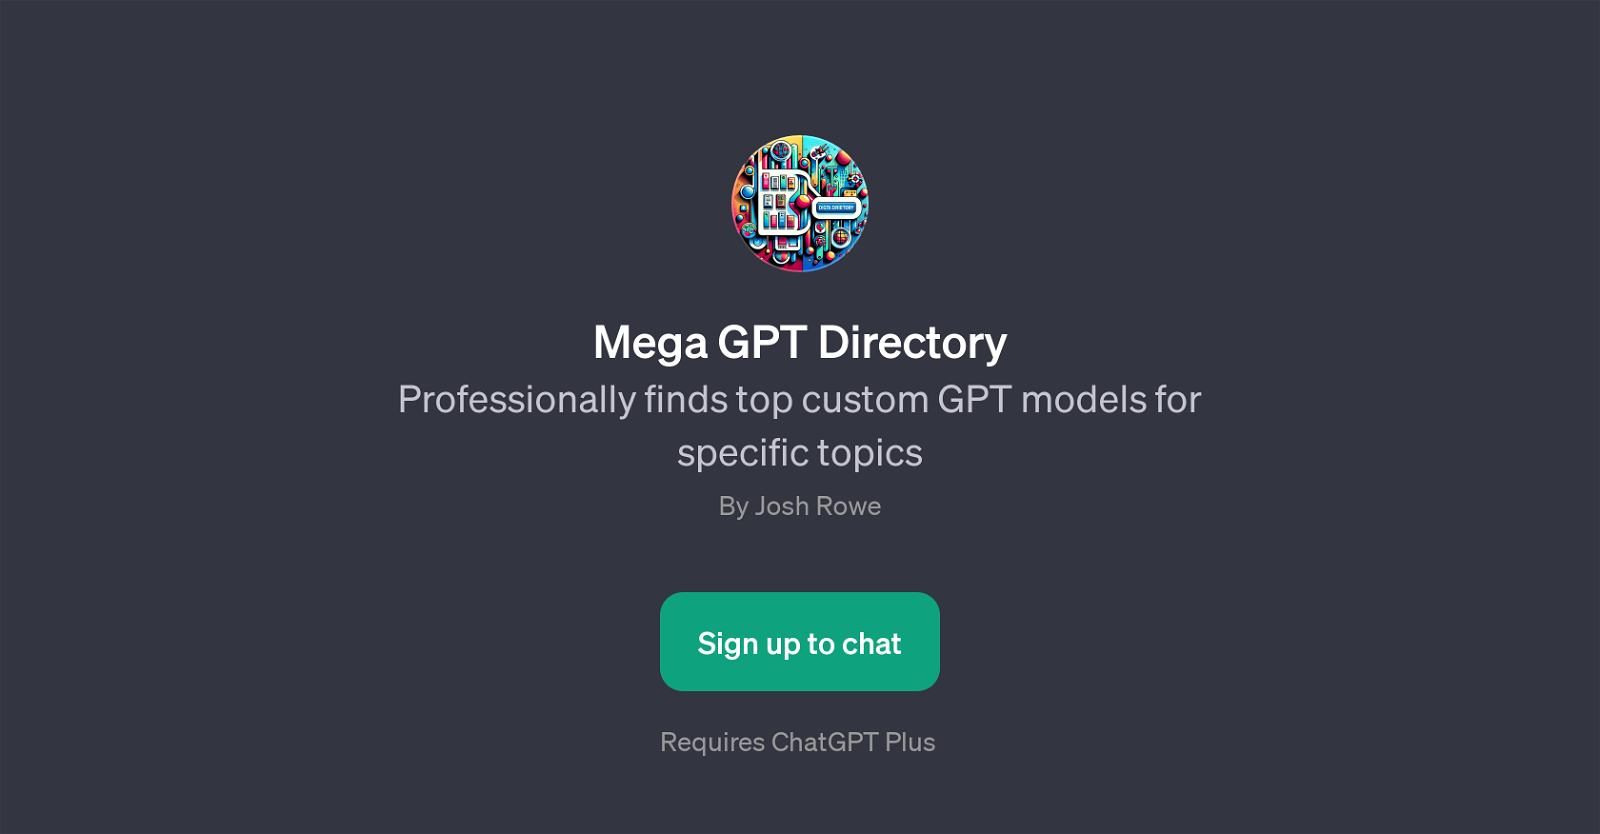 Mega GPT Directory website